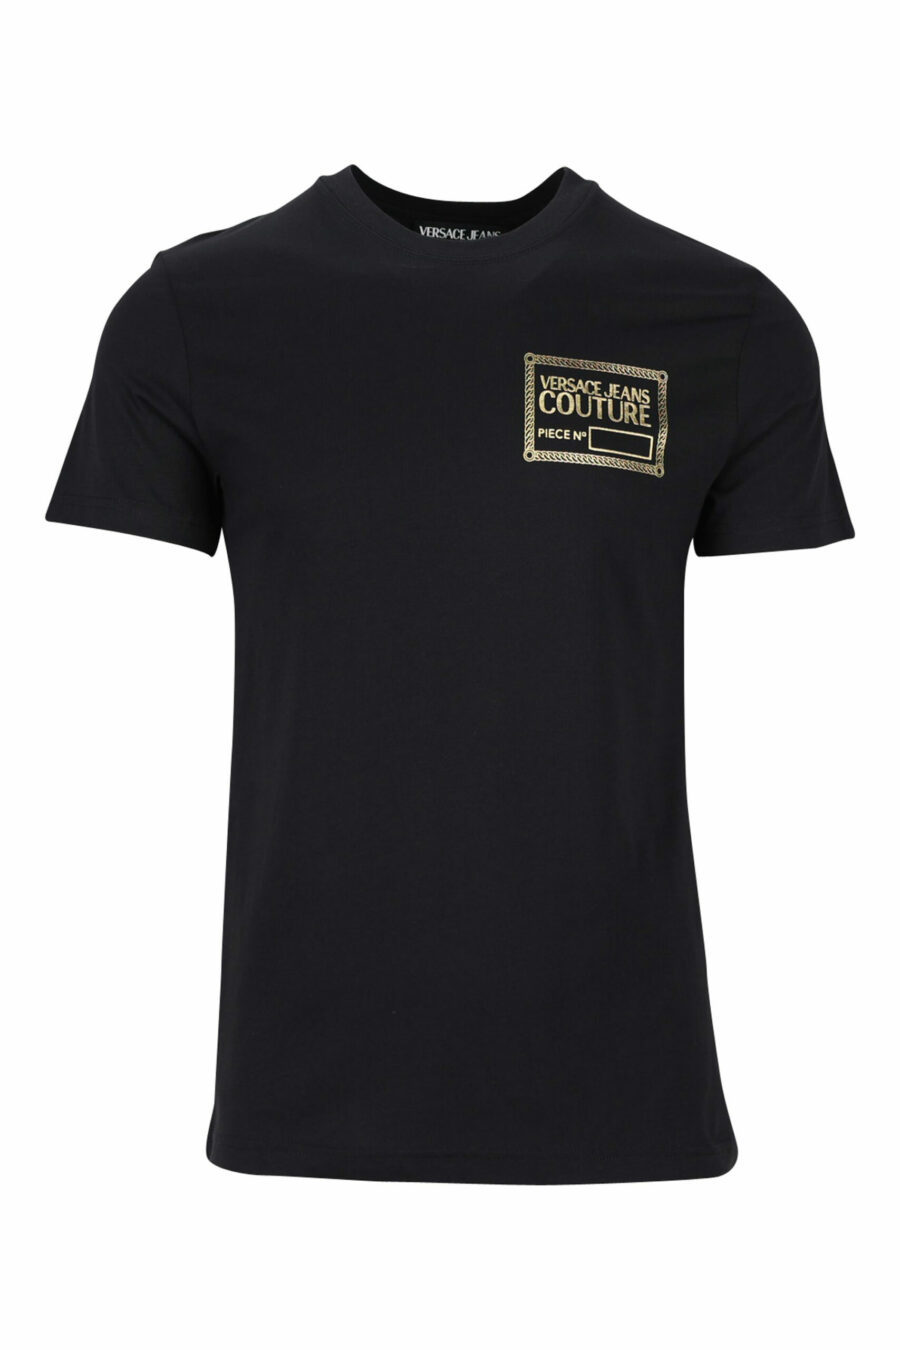 T-shirt noir avec minilogue doré "piece number" - 8052019456875 scaled